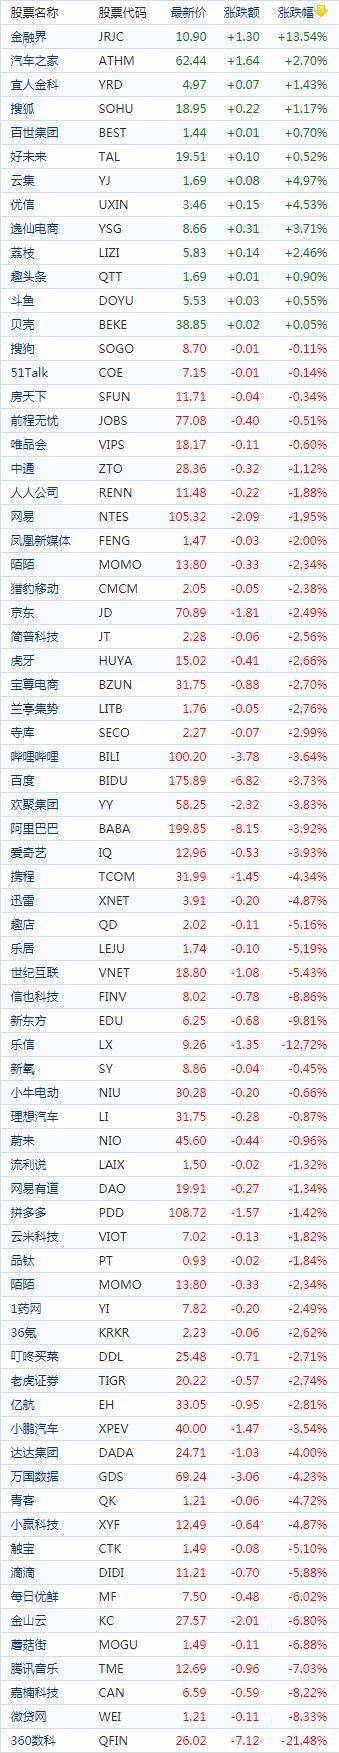 中国概念股周四收盘普遍下跌 京东下跌2.49%报收70.89美元